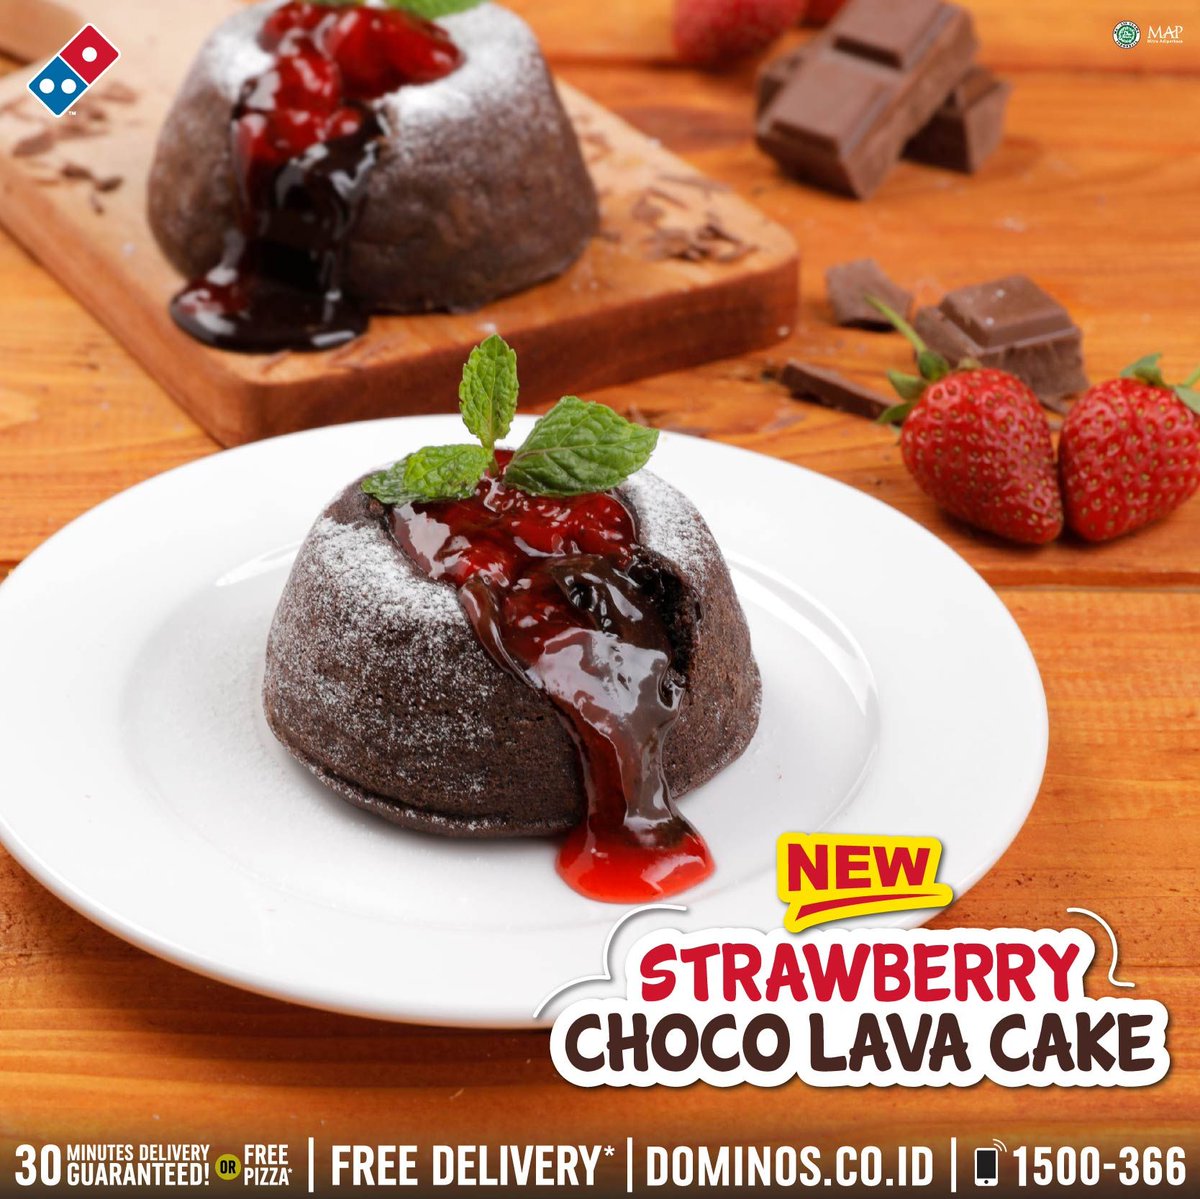 Strawberry Choco Lava Cake Kue Cokelat hangat dengan lelehan cokelat dan sa...